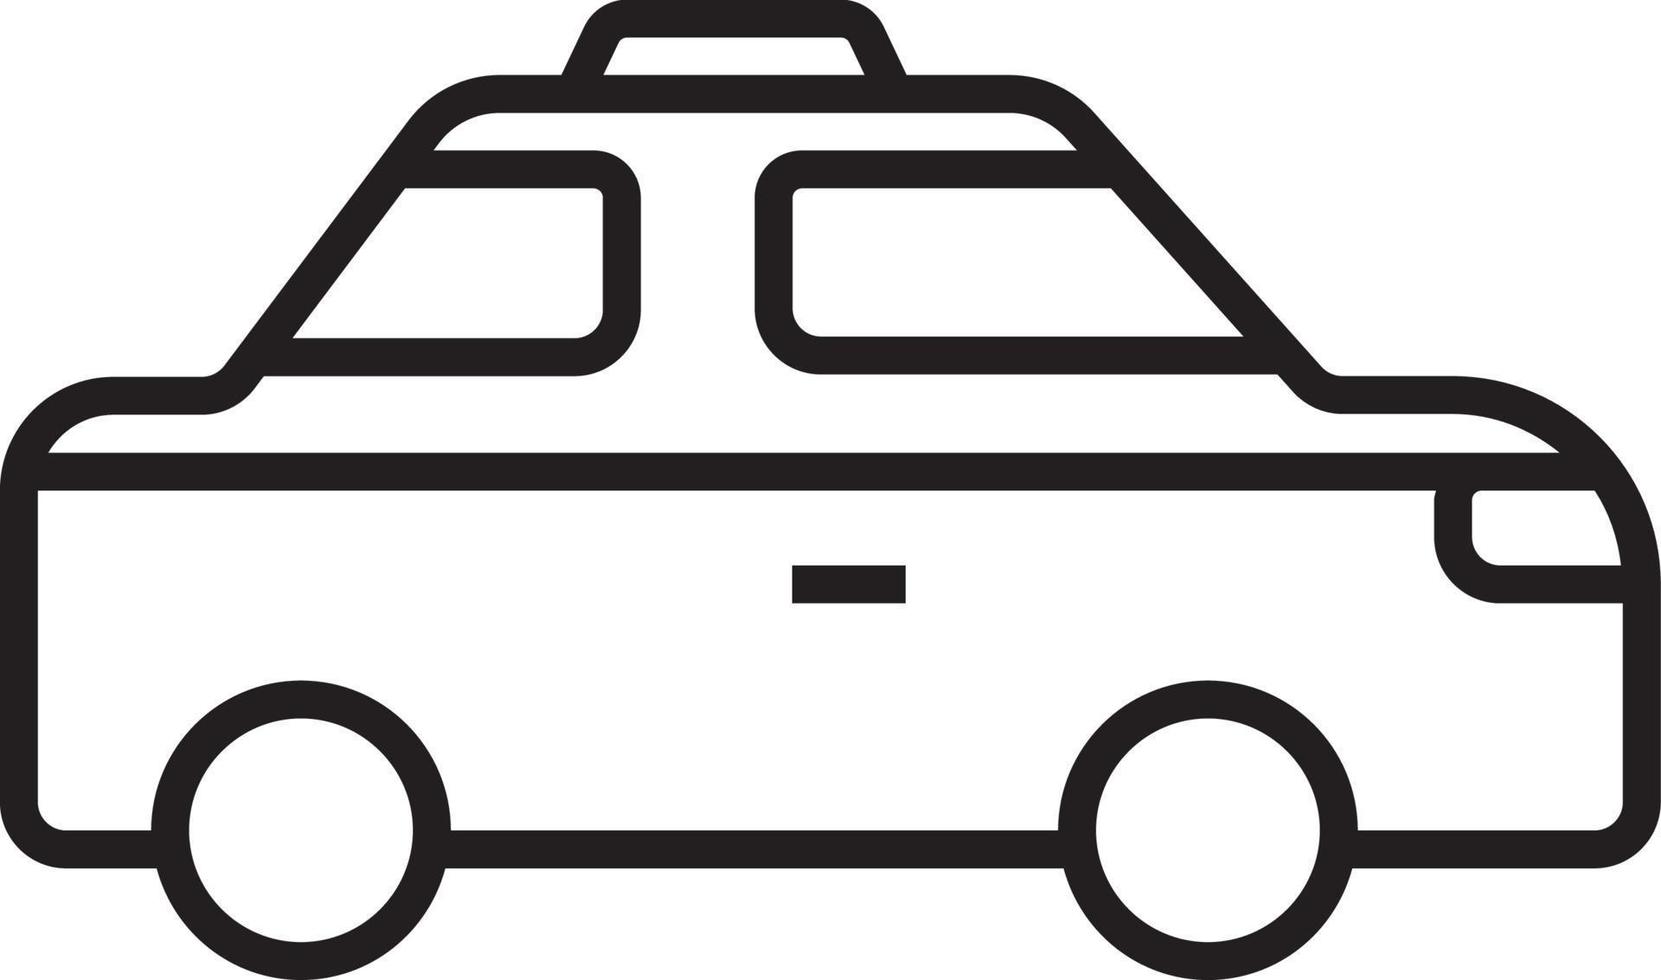 icono de transporte de taxi iconos de personas con estilo de contorno negro. vehículo, símbolo, transporte, línea, contorno, estación, viaje, automóvil, editable, pictograma, aislado, plano. ilustración vectorial vector